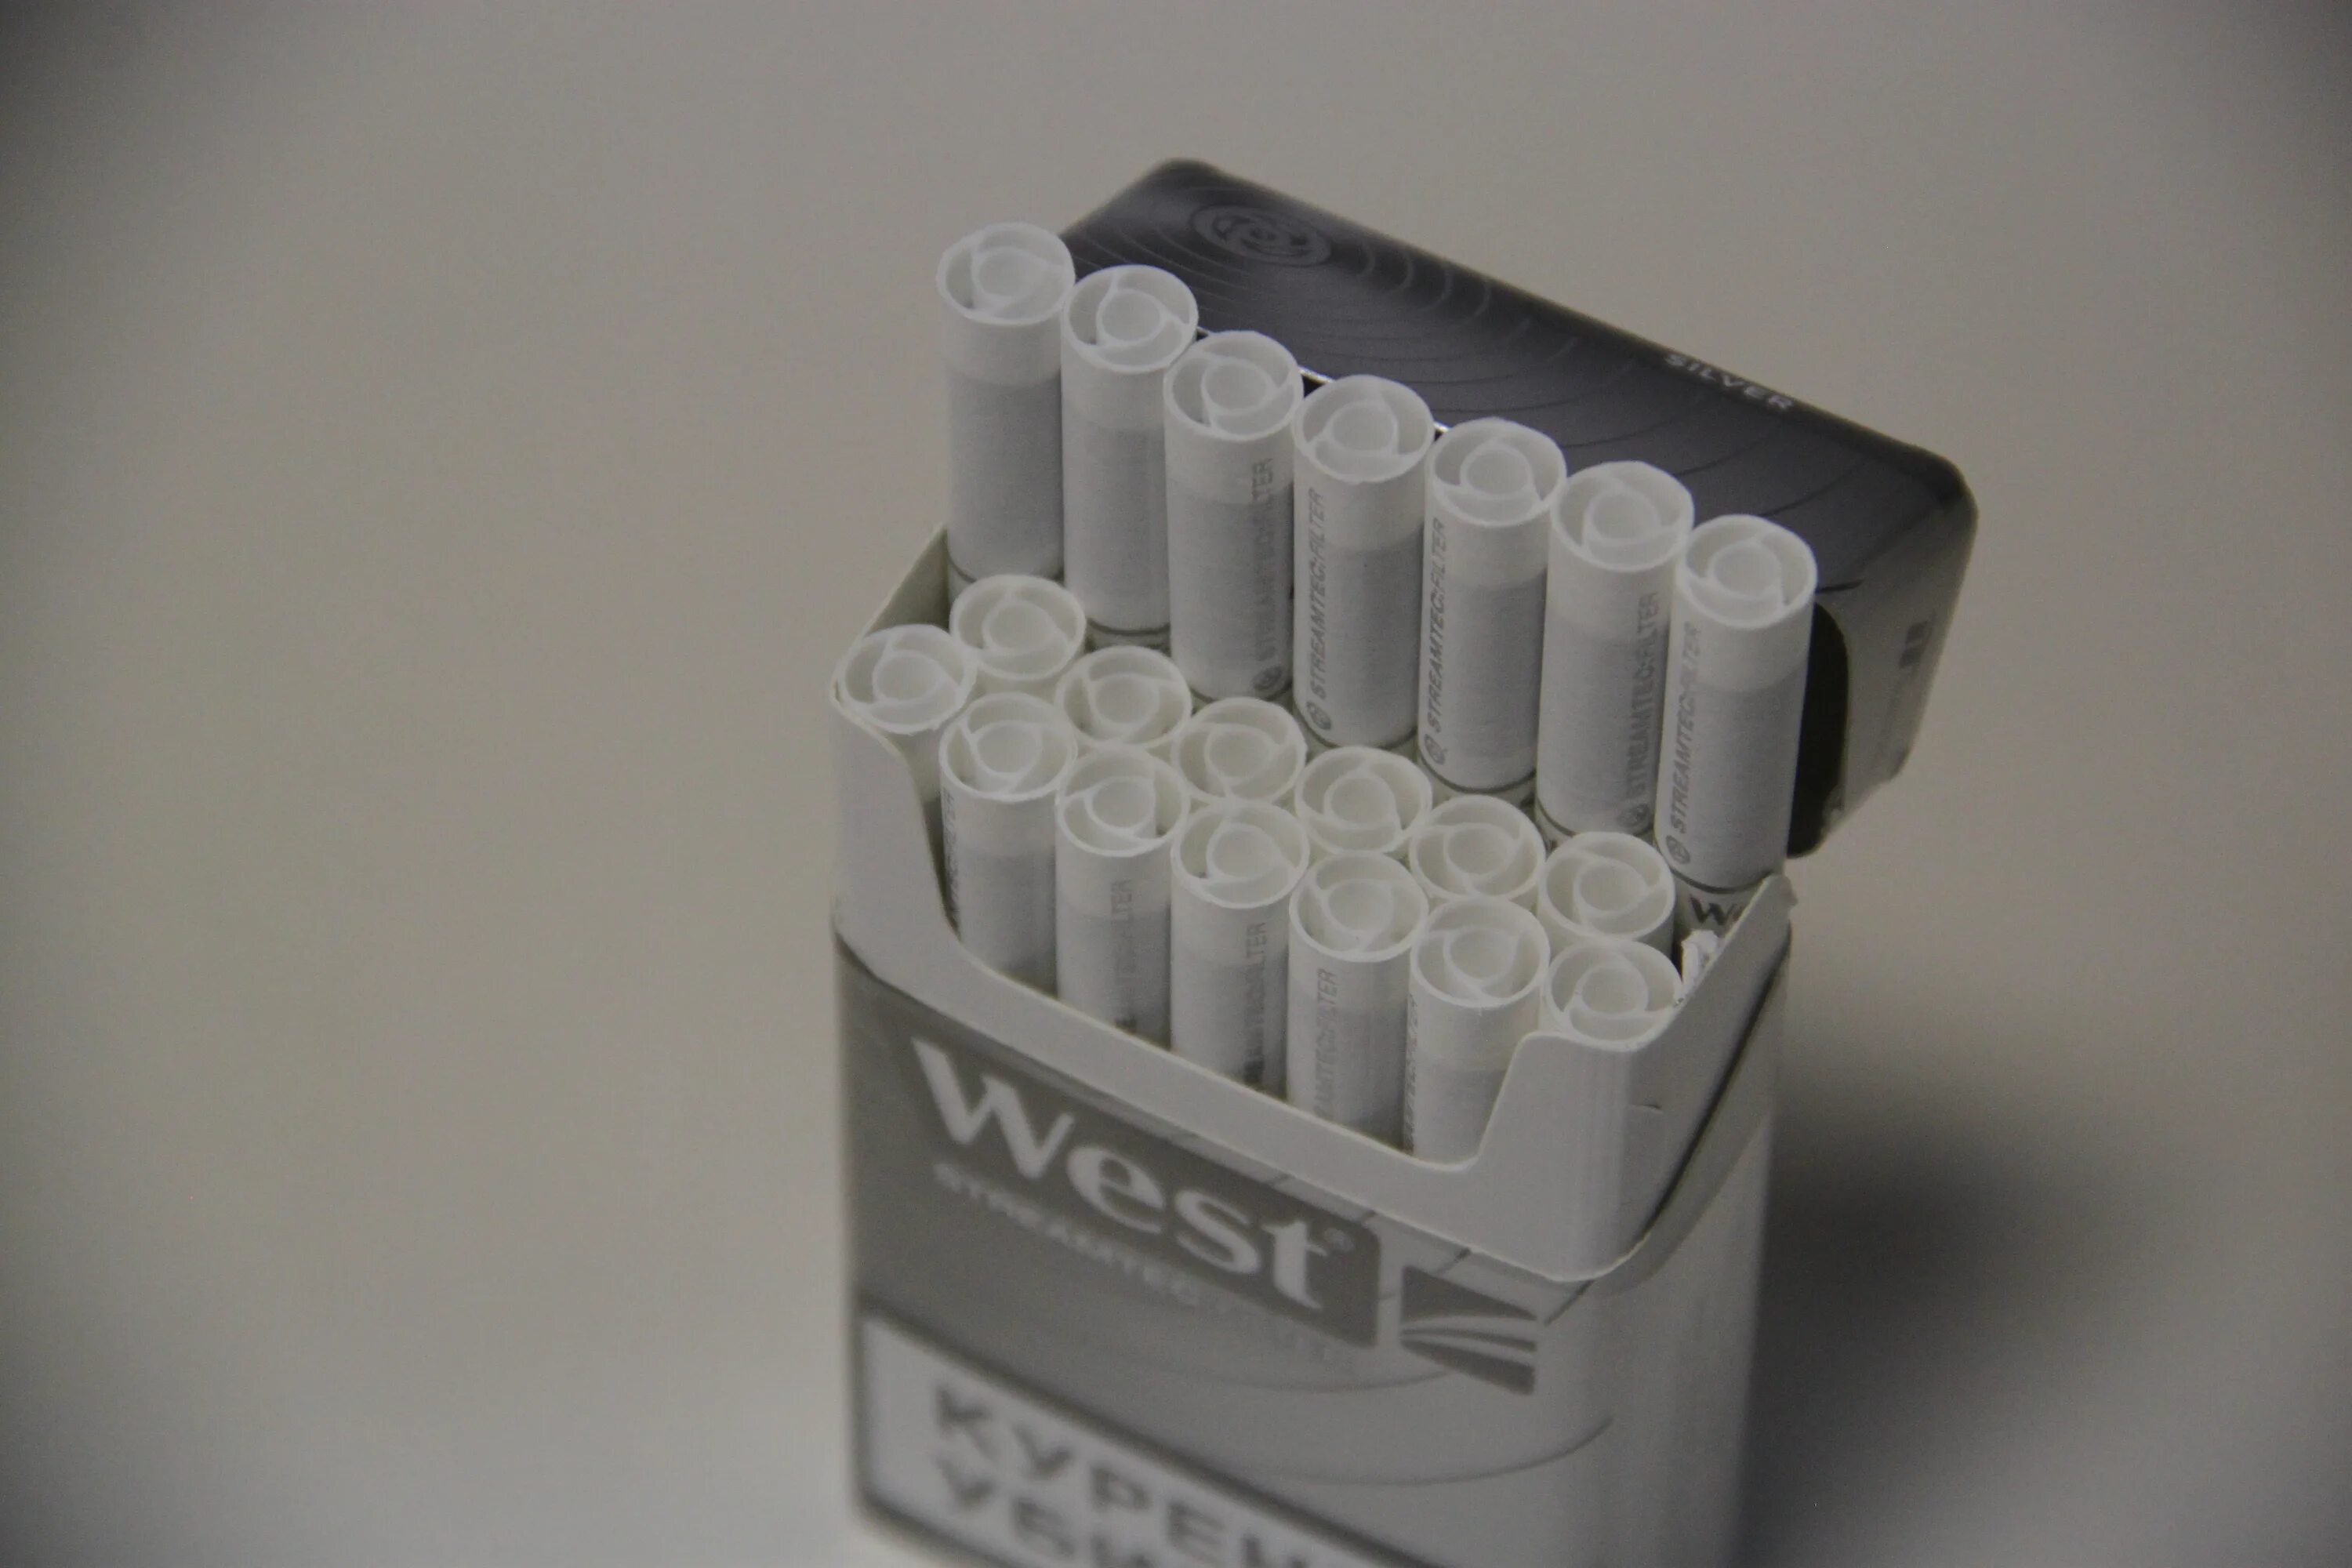 Сигареты West Silver Streamtec Filter. Сигареты West Compact Silver. Сигареты Вест компакт синий. Сигареты West с пластиковым фильтром. Сигареты с угольным фильтром